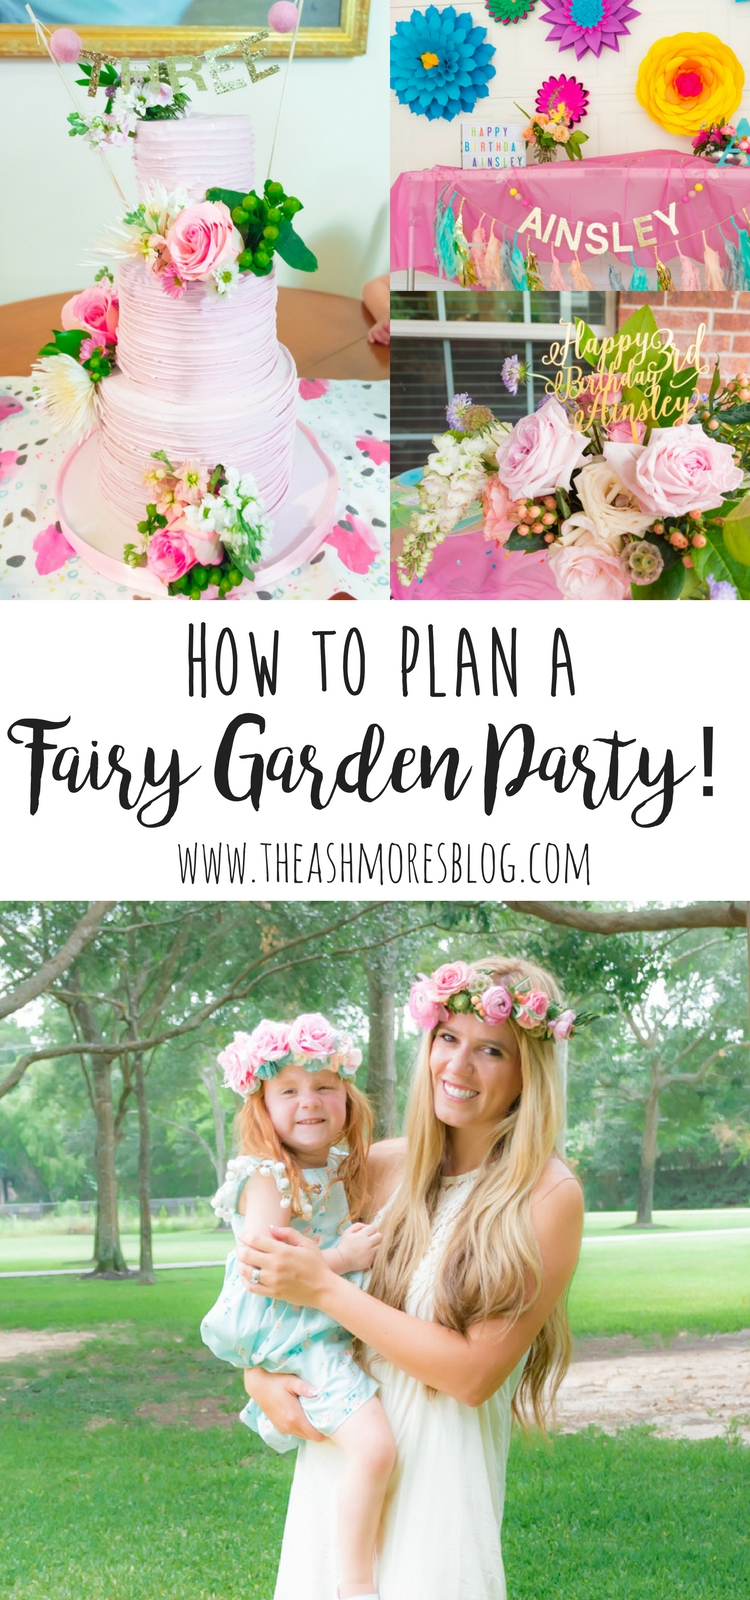 How to plan a Fairy Garden Party!